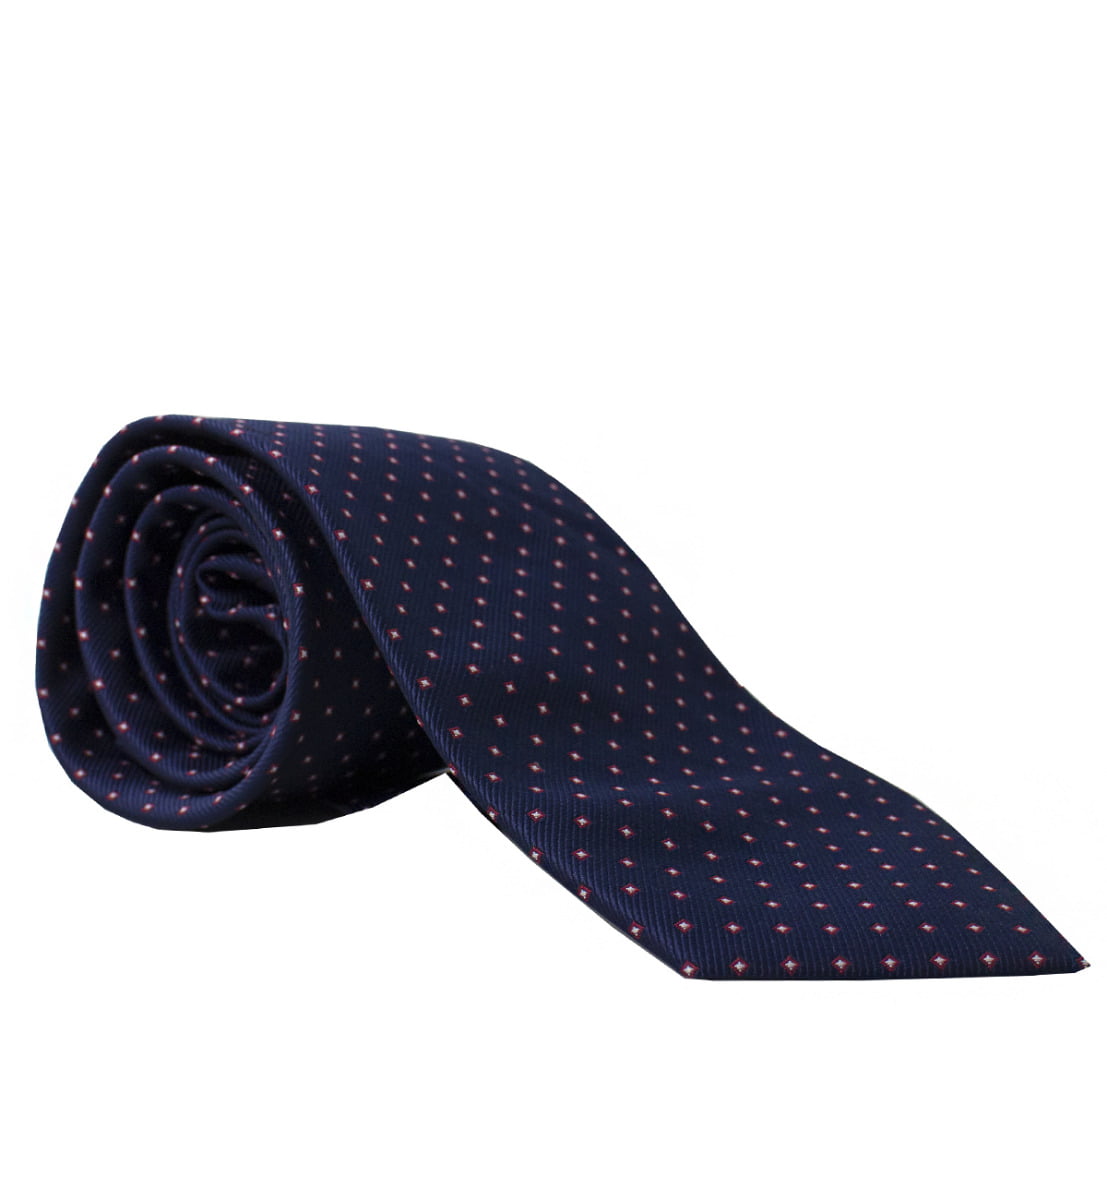 Cravatta uomo blu fantasia quadretti rossi 8cm di larghezza made in italy